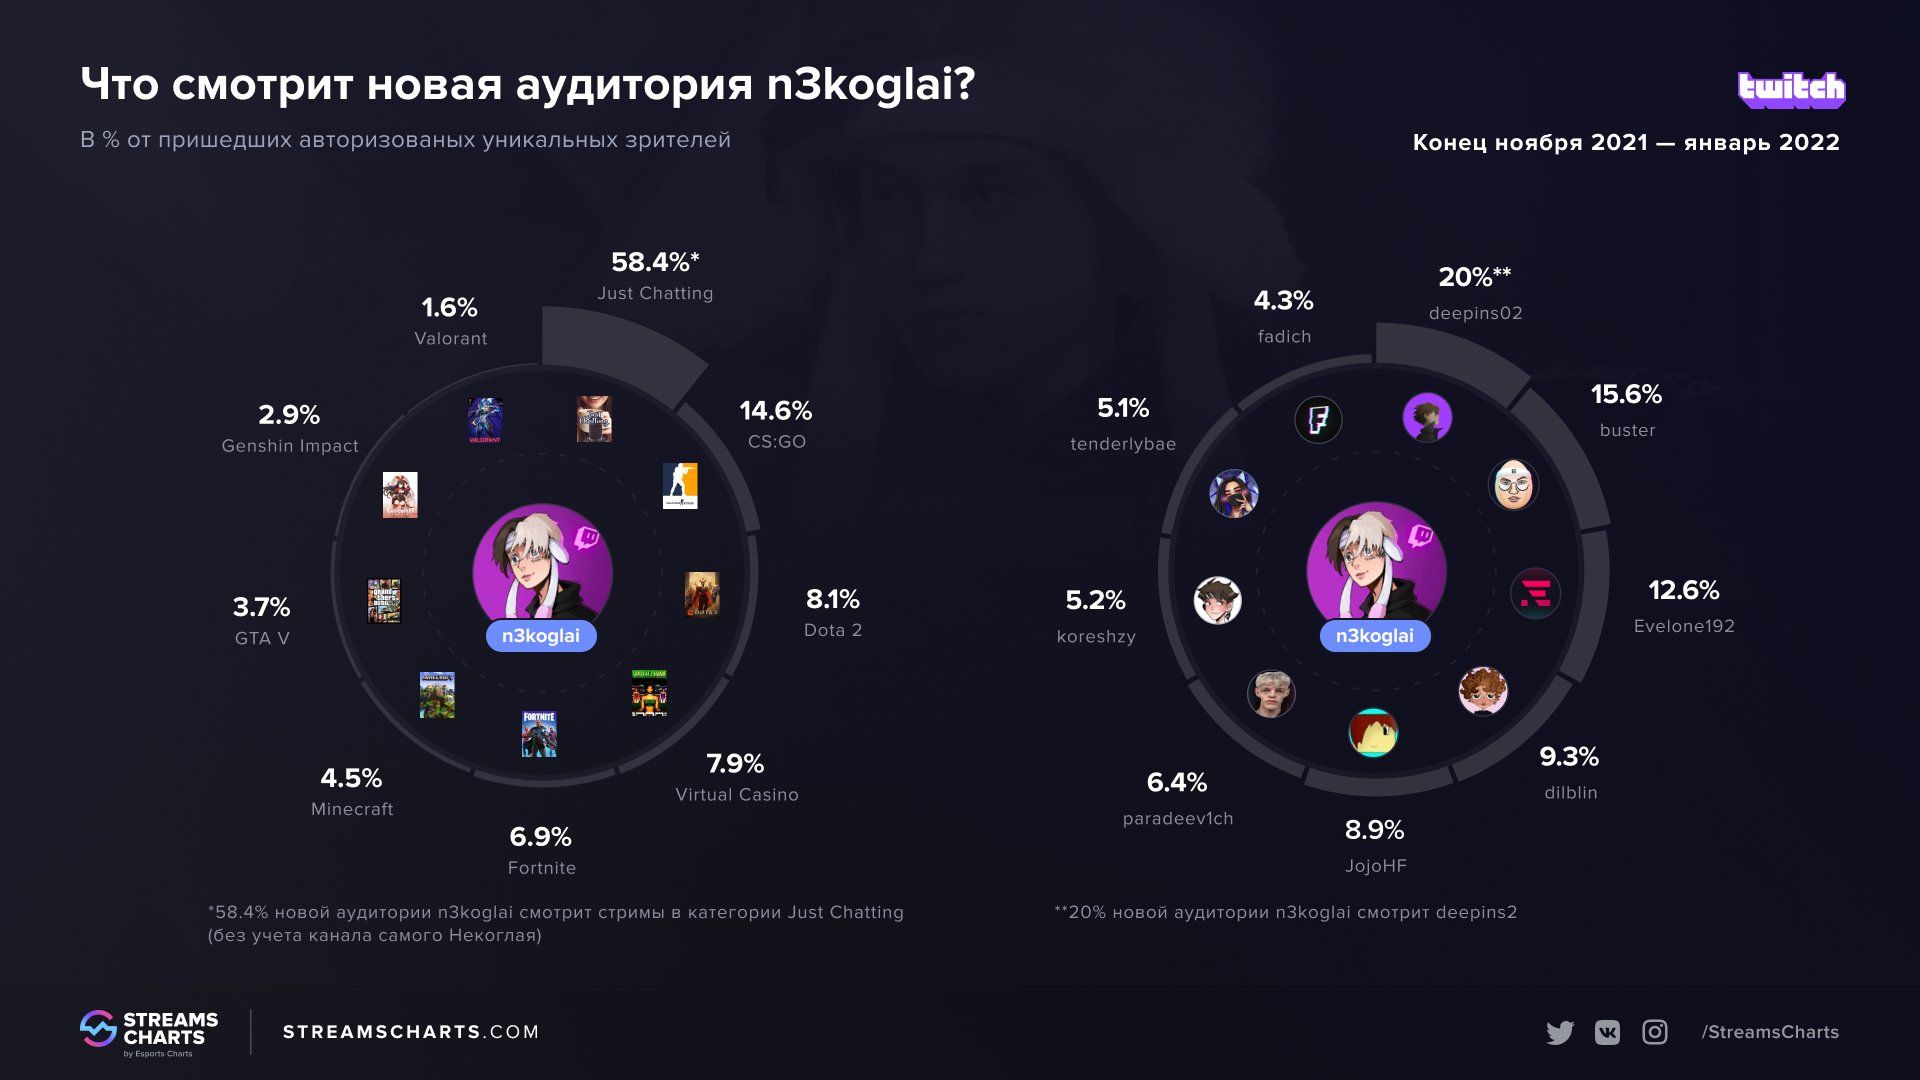 Статистика аудитории n3koglai. Источник: Streams Charts